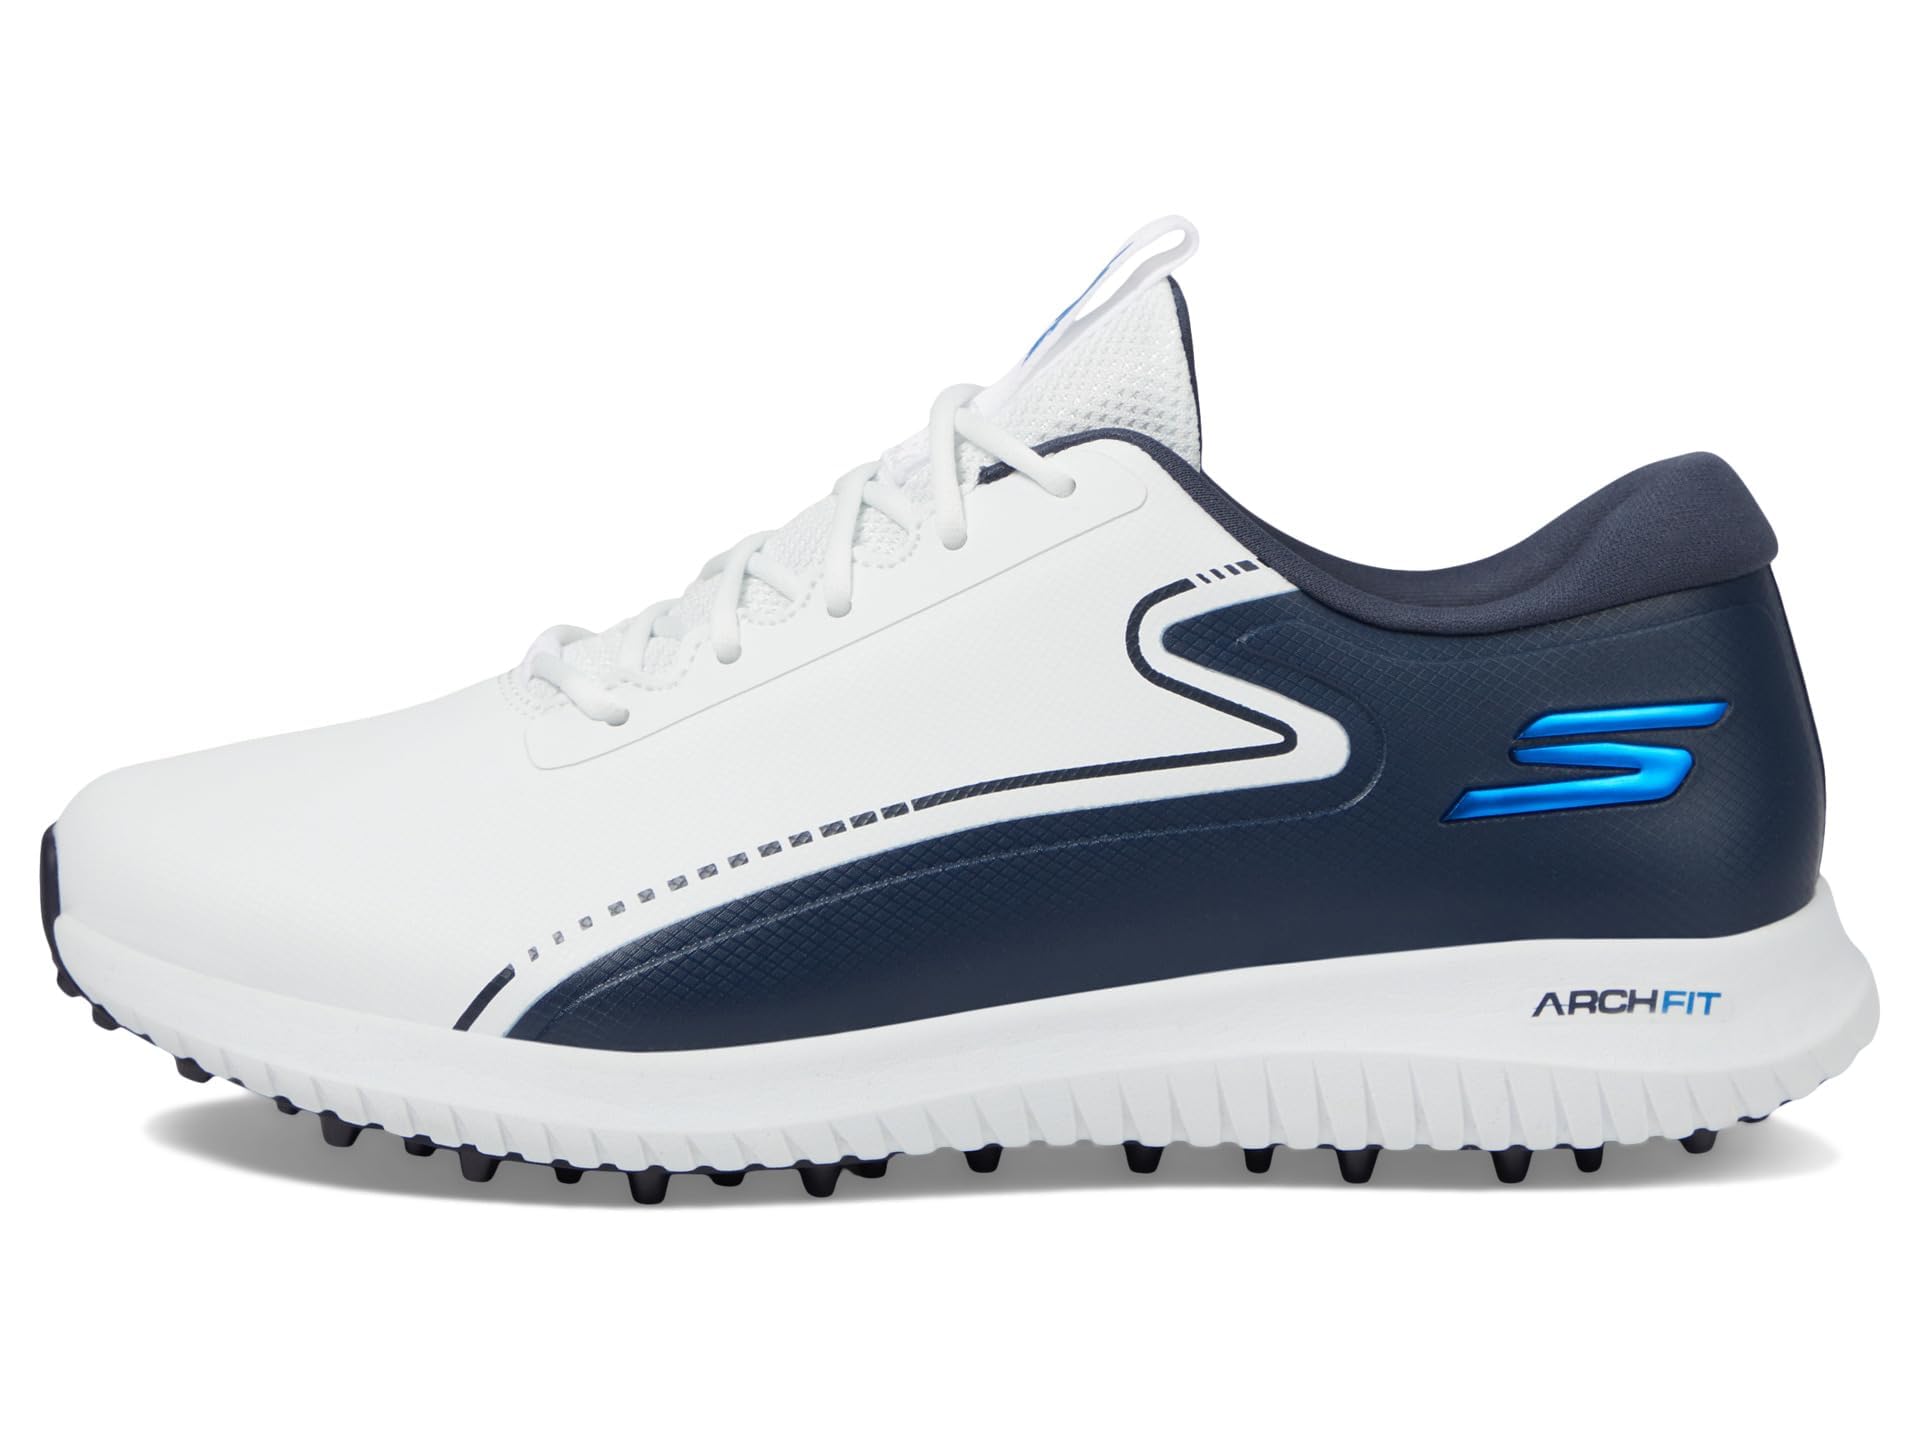 Skechers Men's Max 2 Arch Fit Waterproof Spikeless Golf Shoe Sneaker